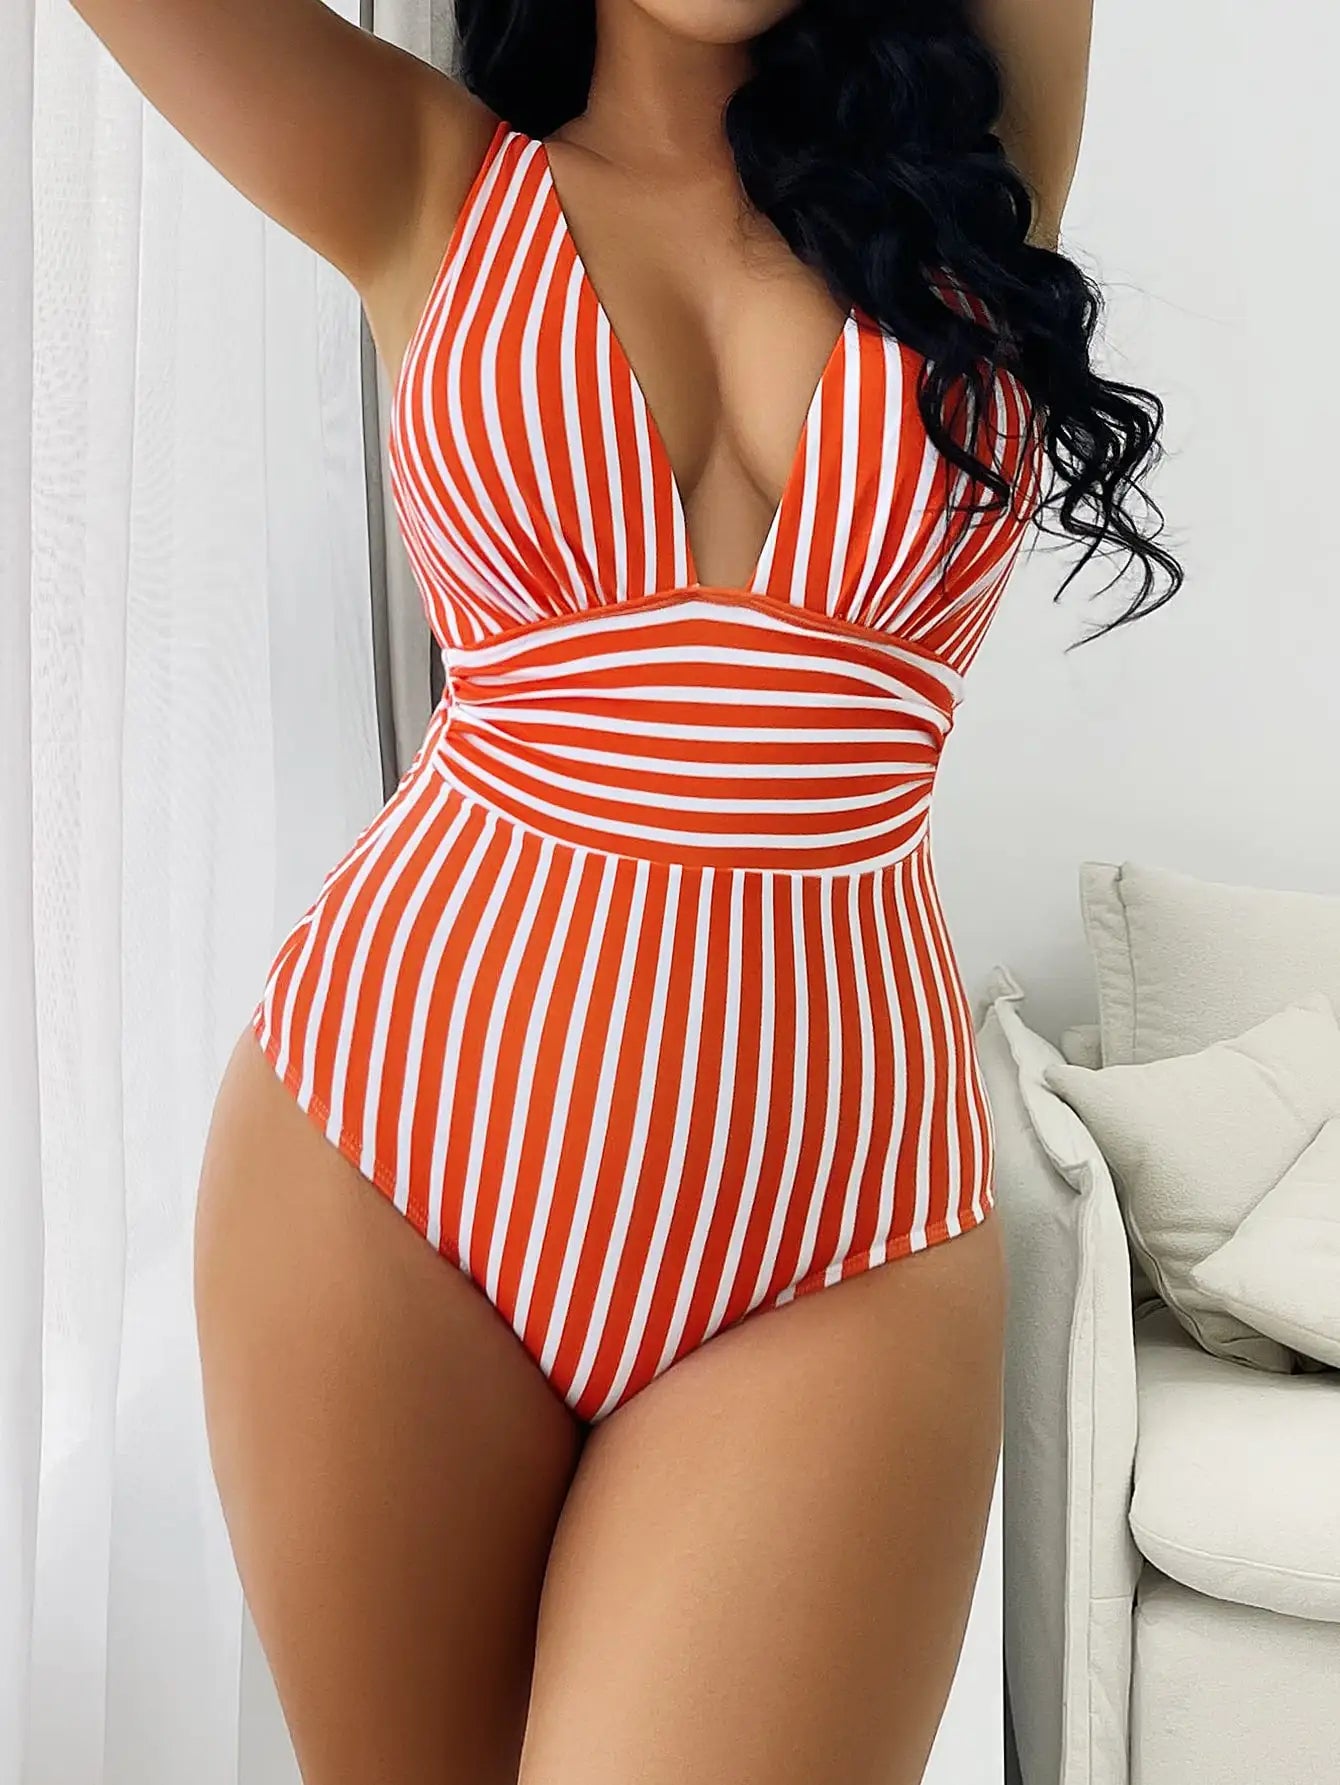 Striped One Piece Swimsuit Vintage Swimwear Women V-neck Bathing Swimming Suit Female Summer Beachwear Bodysuit ShopOnlyDeal